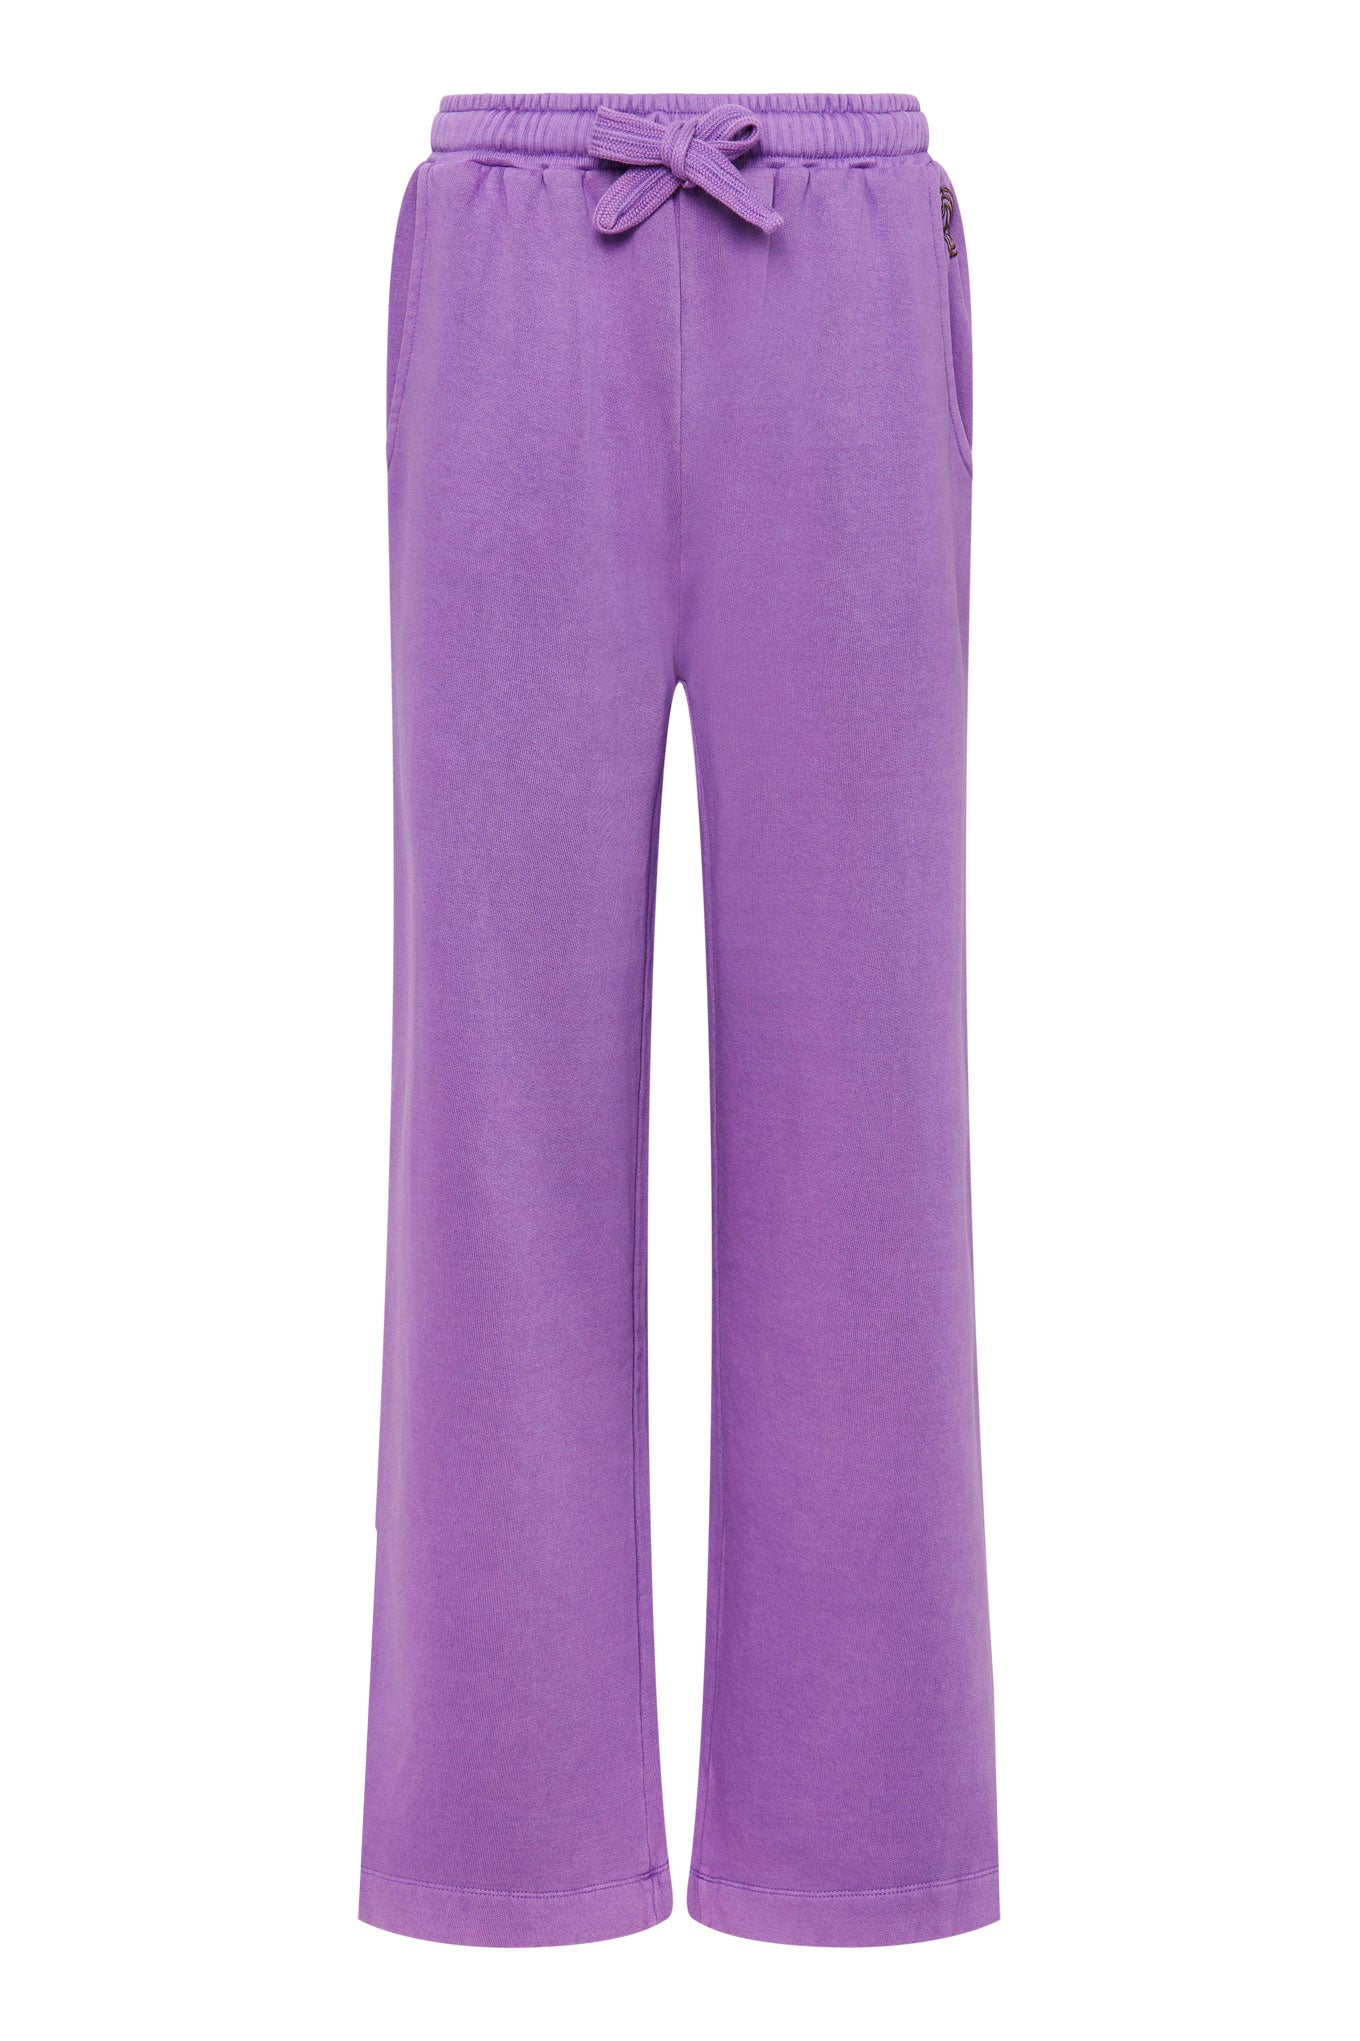 Pantalon de jogging large violet SOLEIL en coton 100% biologique de Komodo